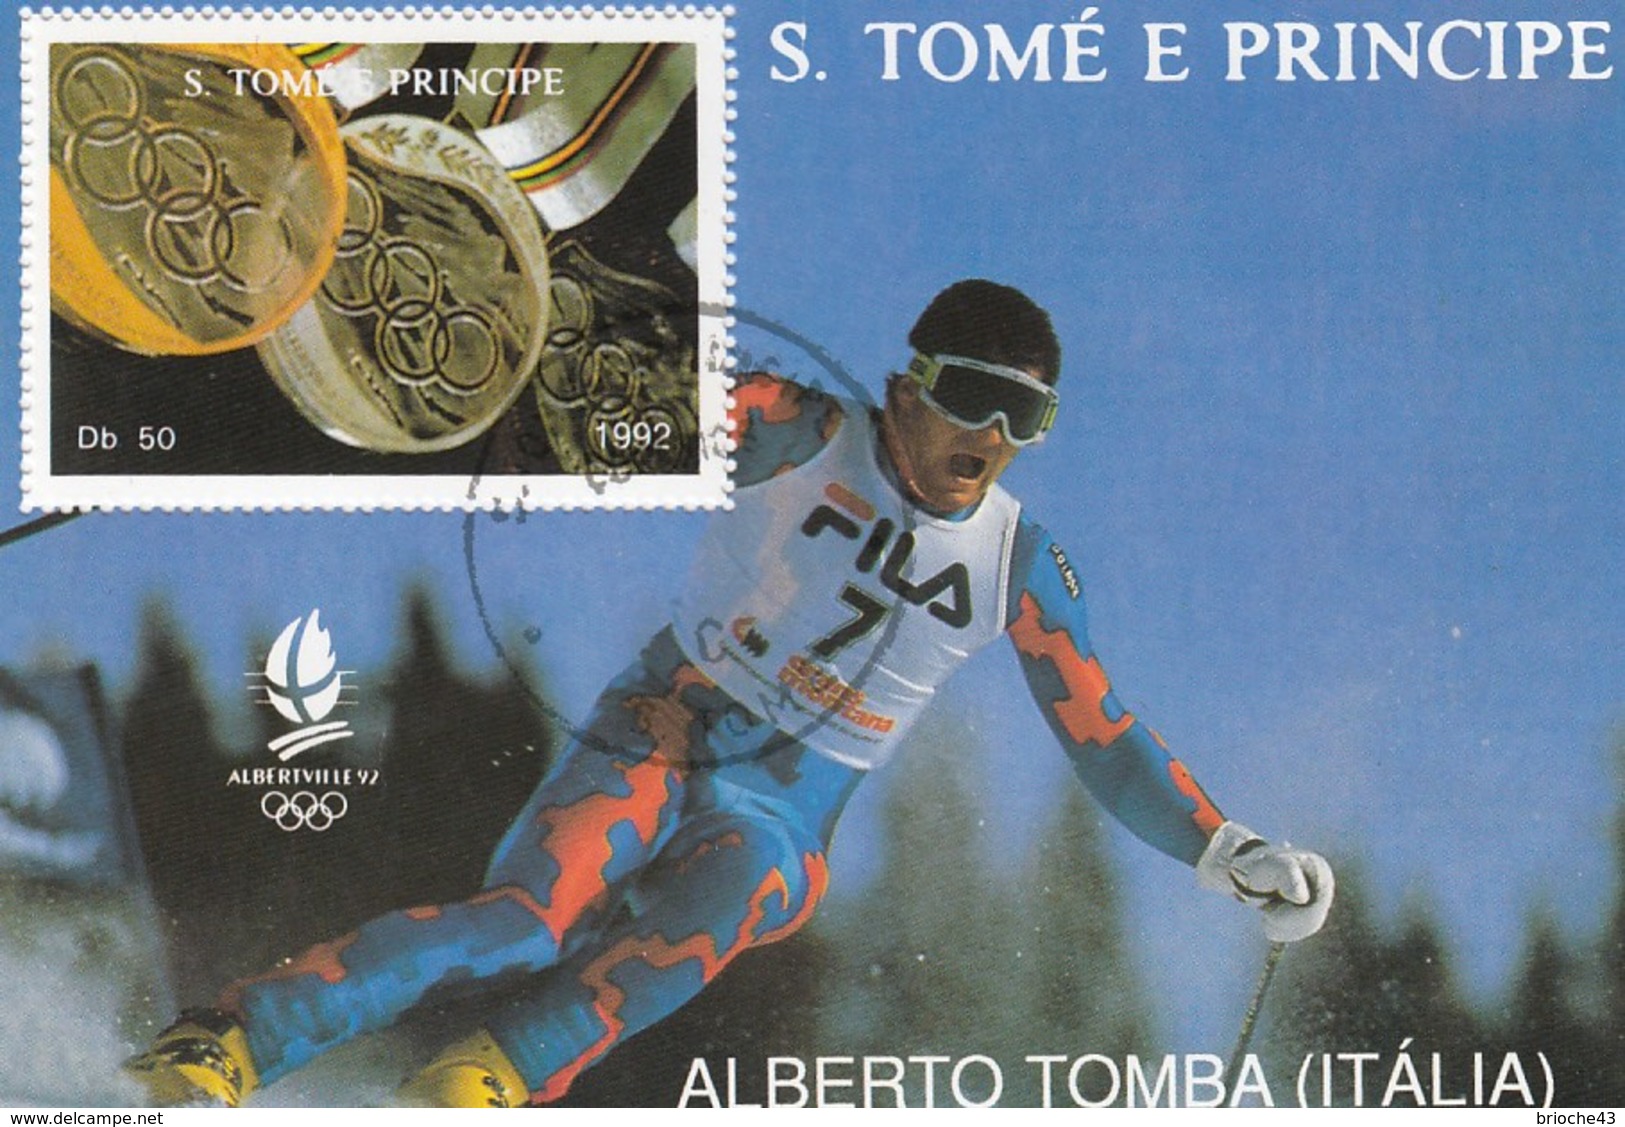 S. TOME E PRINCIPE - 1992  BLOC J.O. ALBERVILLE 92 - ALBERTO TOMBA ITALIA  /5 - Winter 1992: Albertville